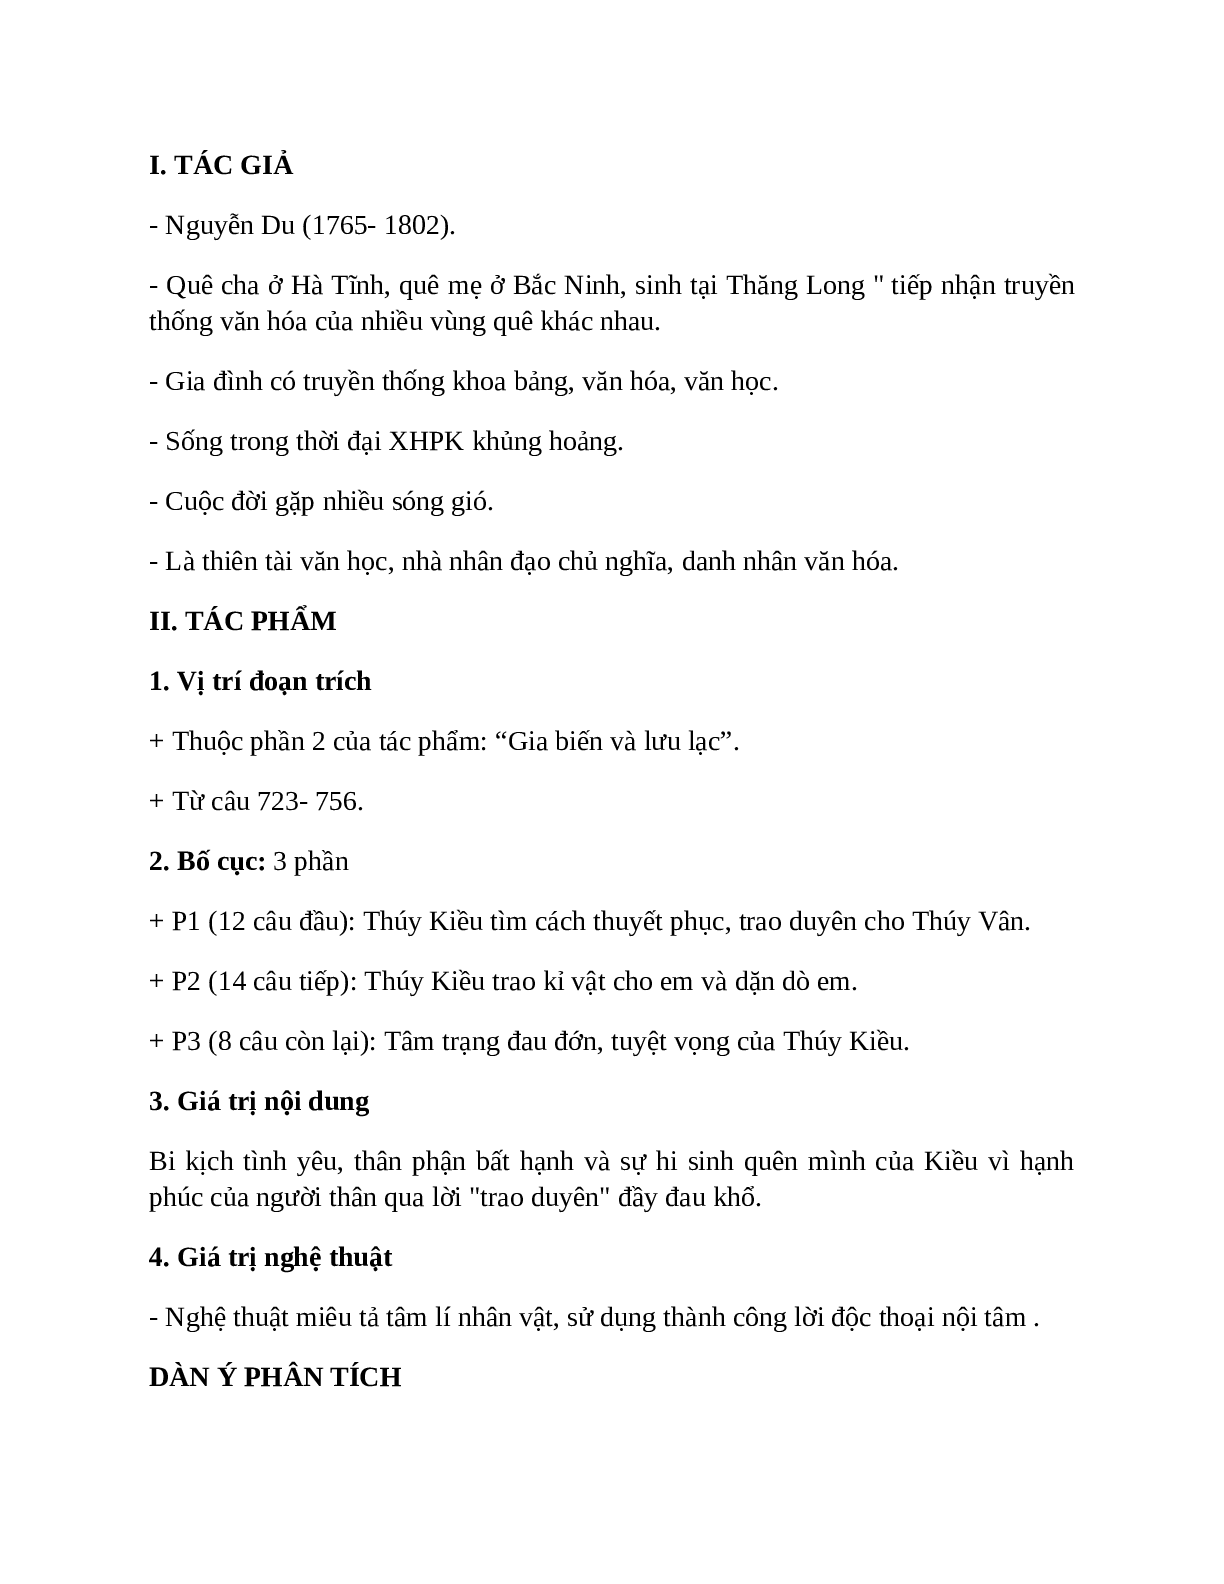 Sơ đồ tư duy bài Trao duyên dễ nhớ, ngắn nhất - Ngữ văn lớp 10 (trang 2)